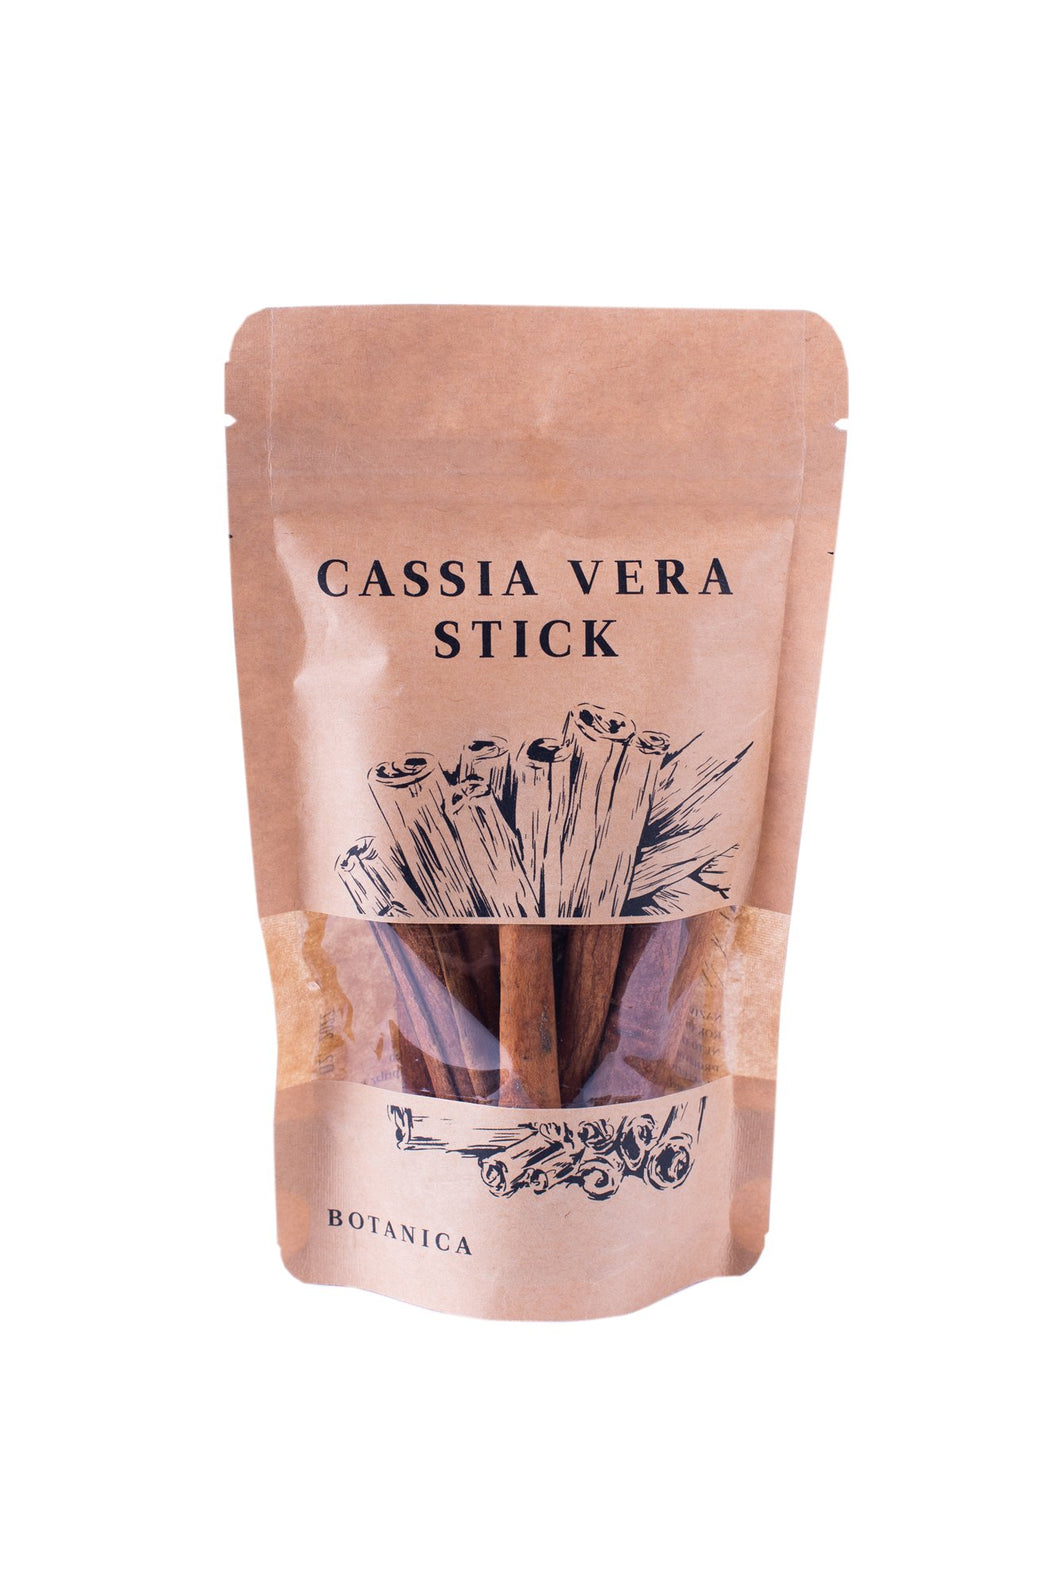 Cassia Vera (Cannella) - Botanica